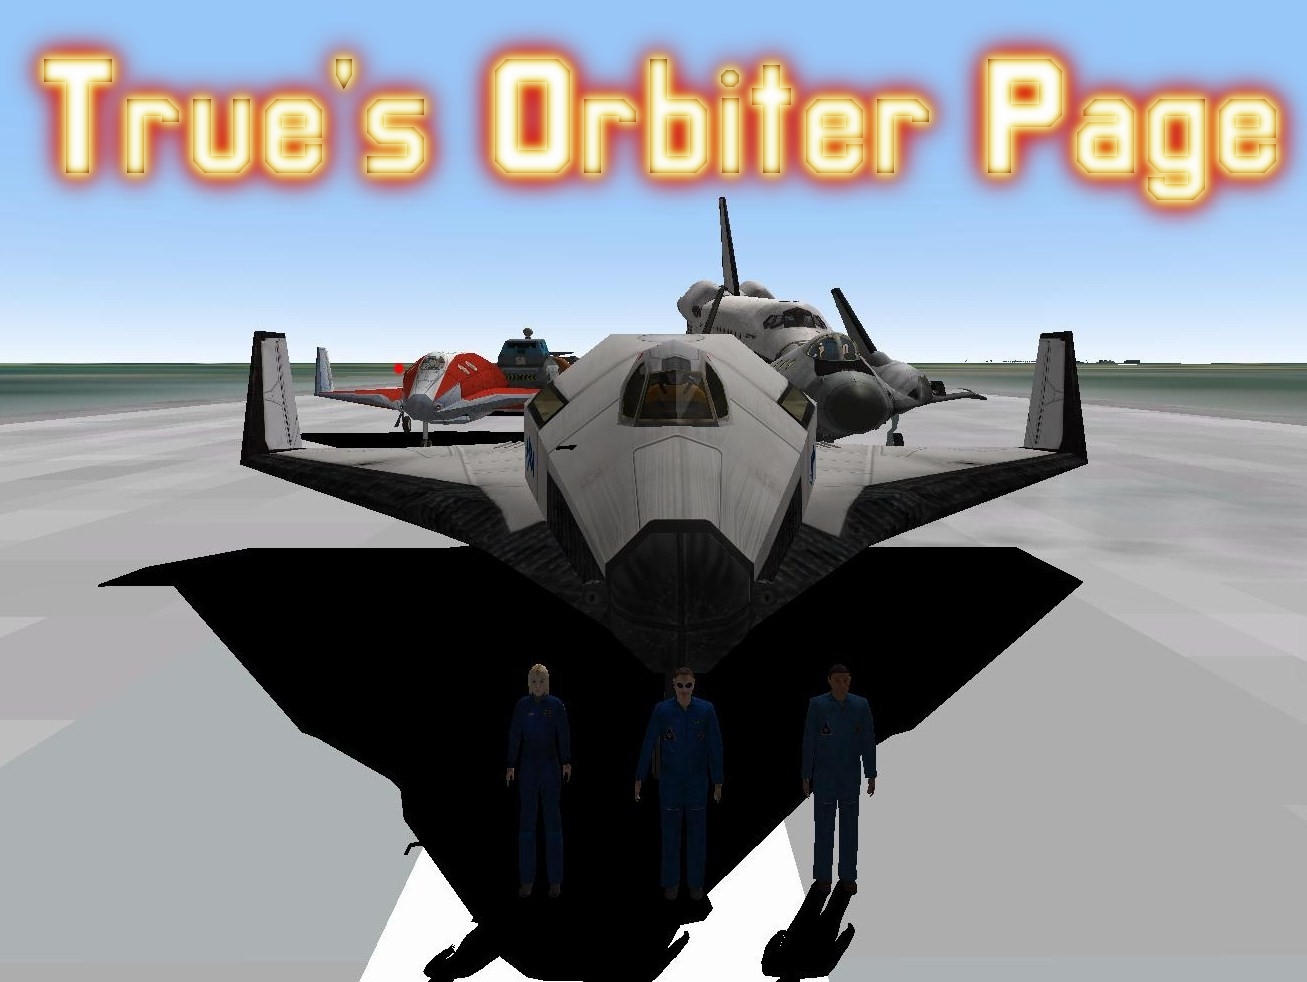 True's Orbiter Page